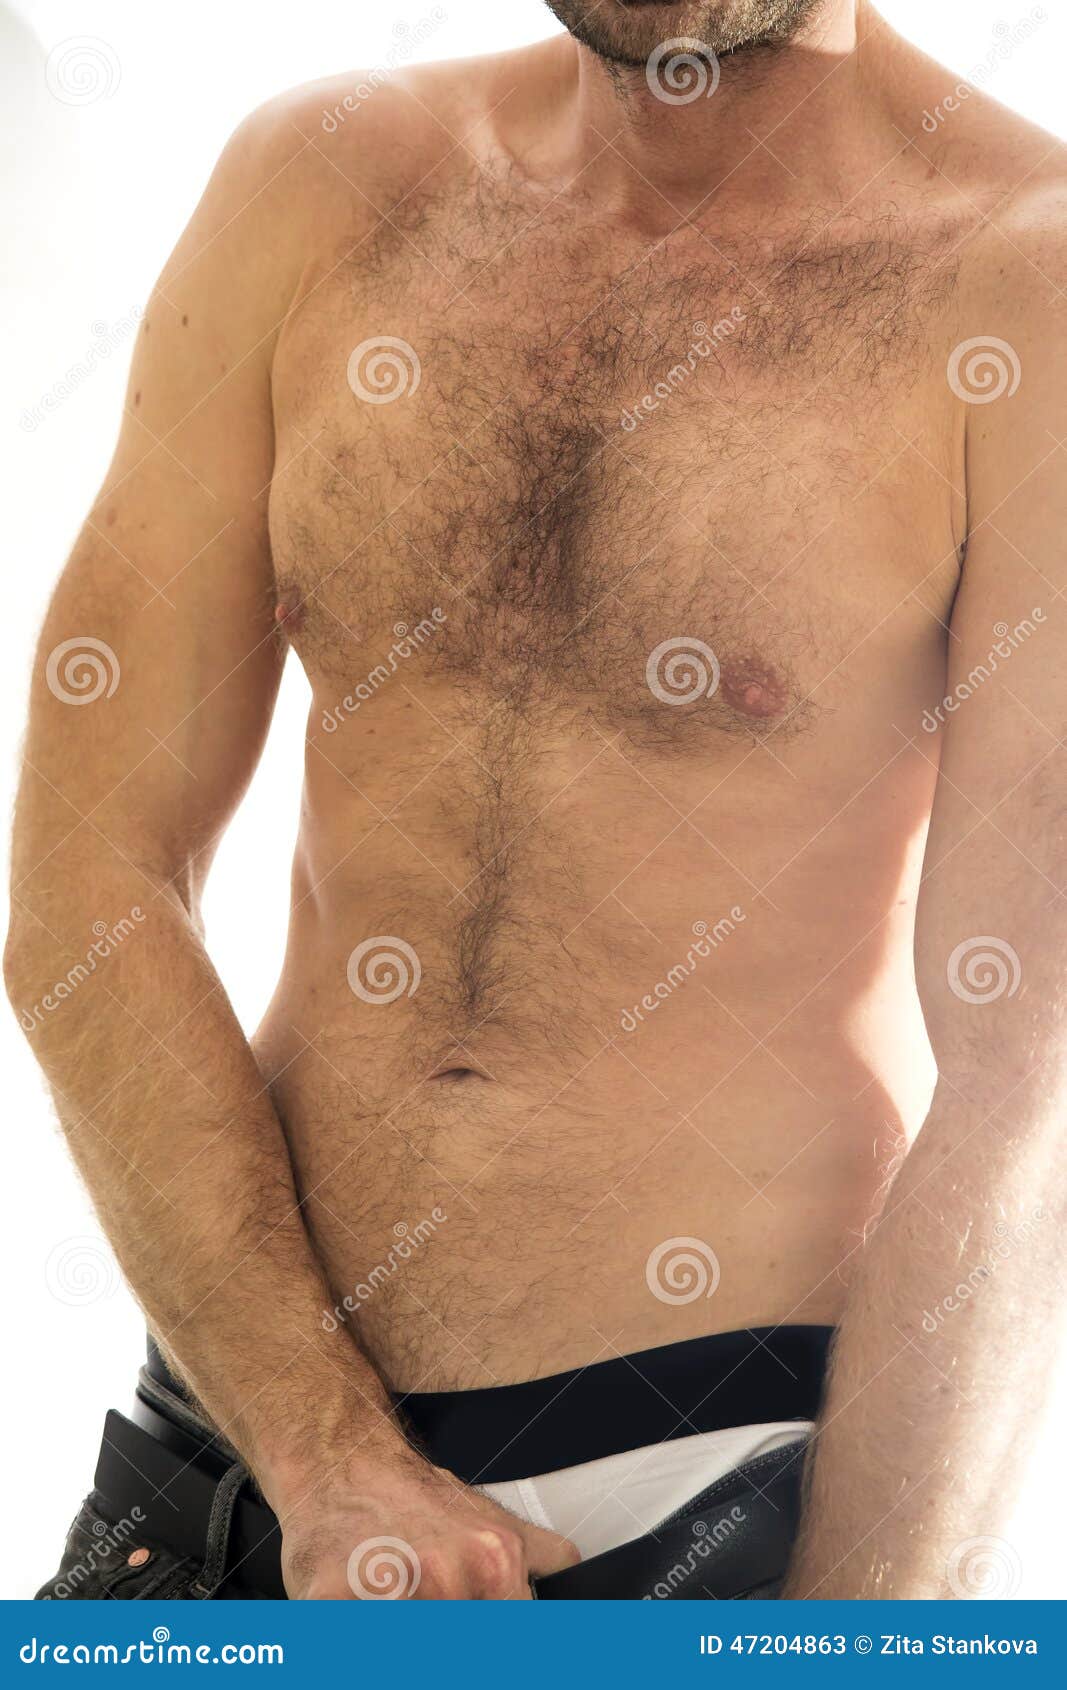 черные волосы на груди у мужчин фото 31